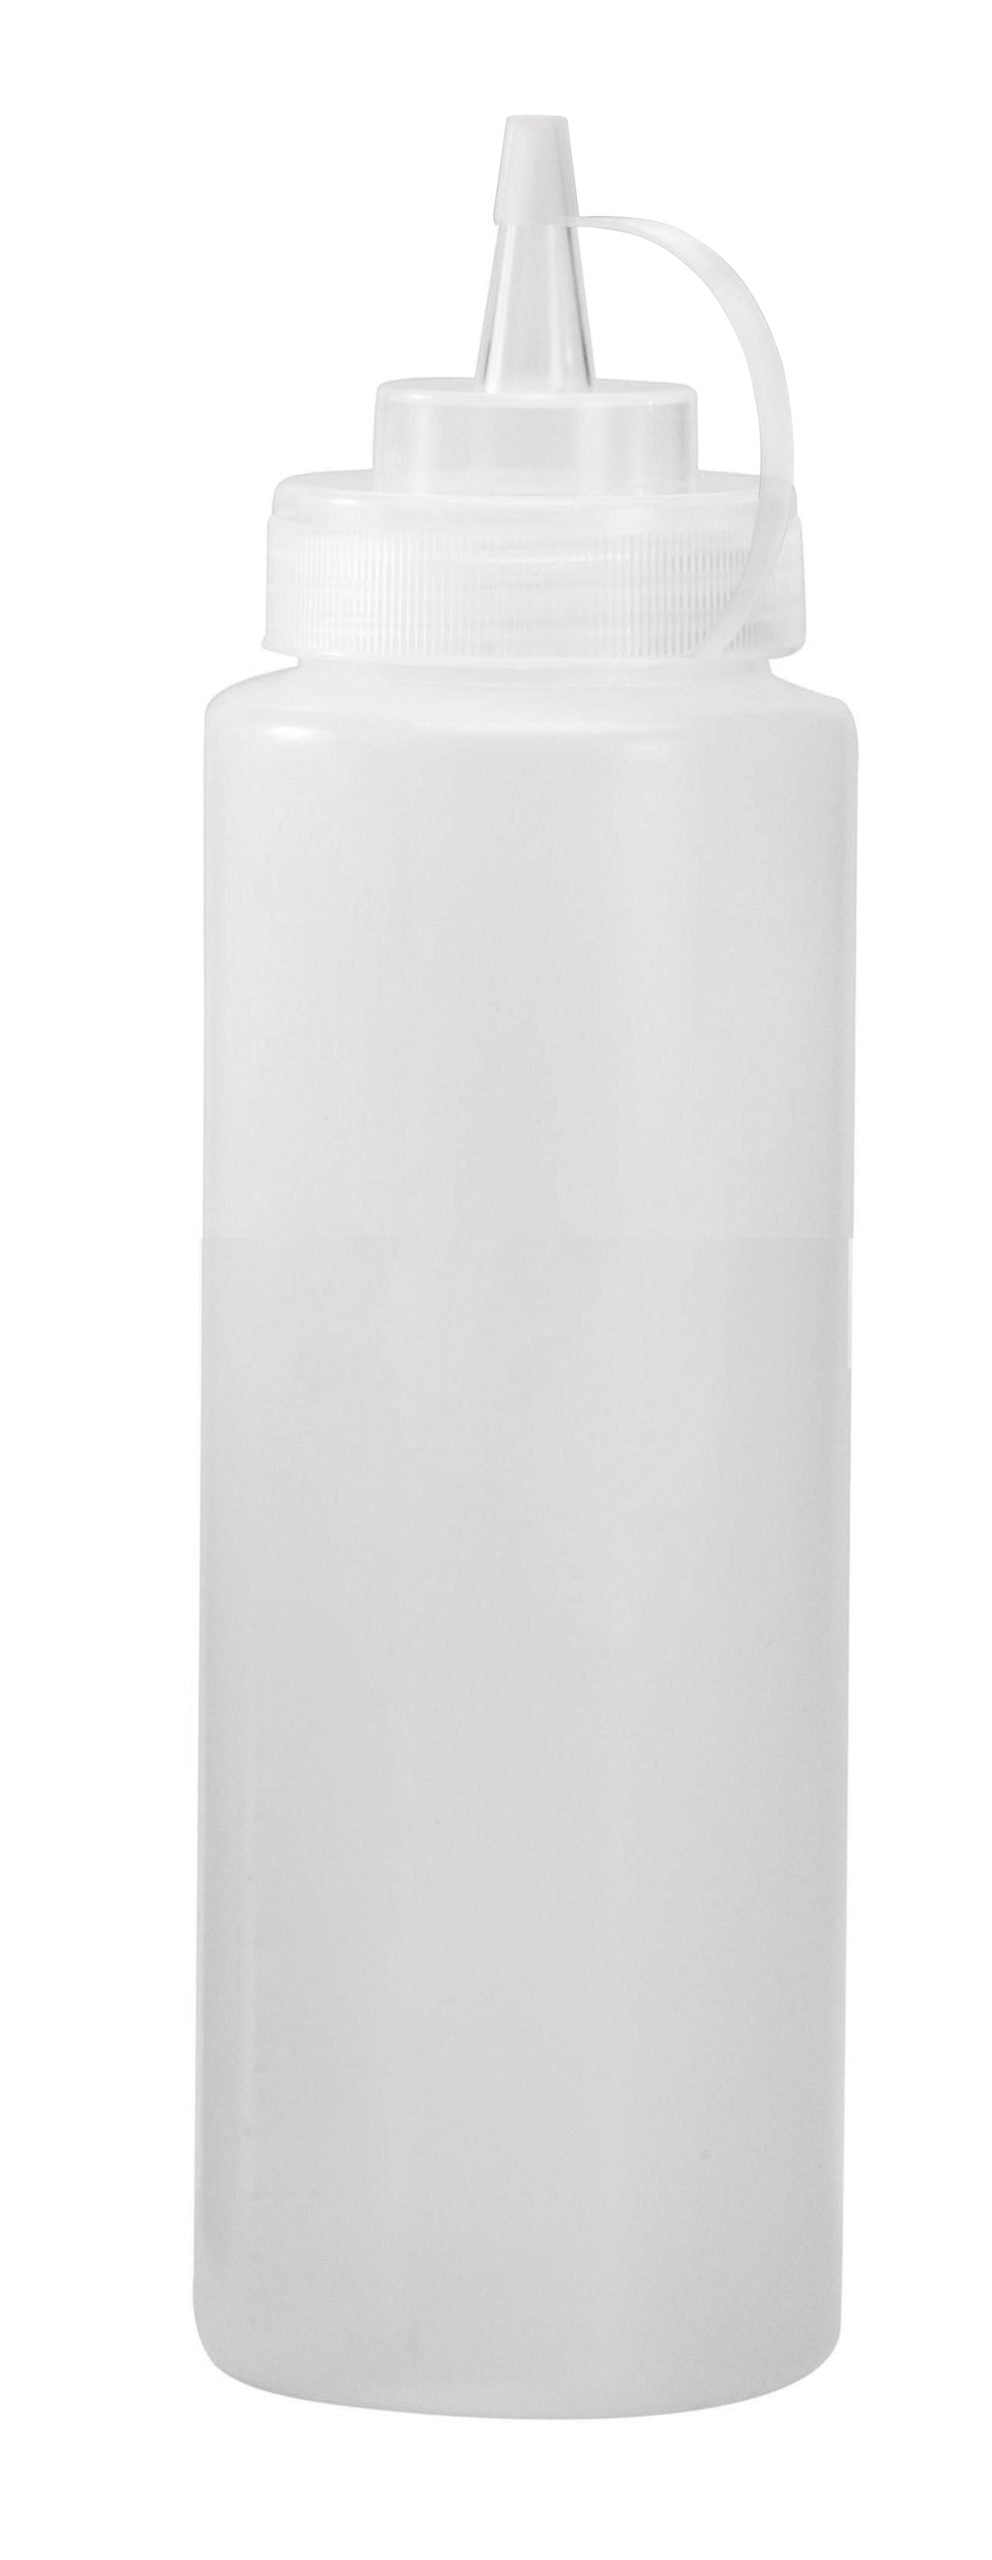 Castro - Clear Plastic Squeeze Bottle W/ Lid, 24 Oz